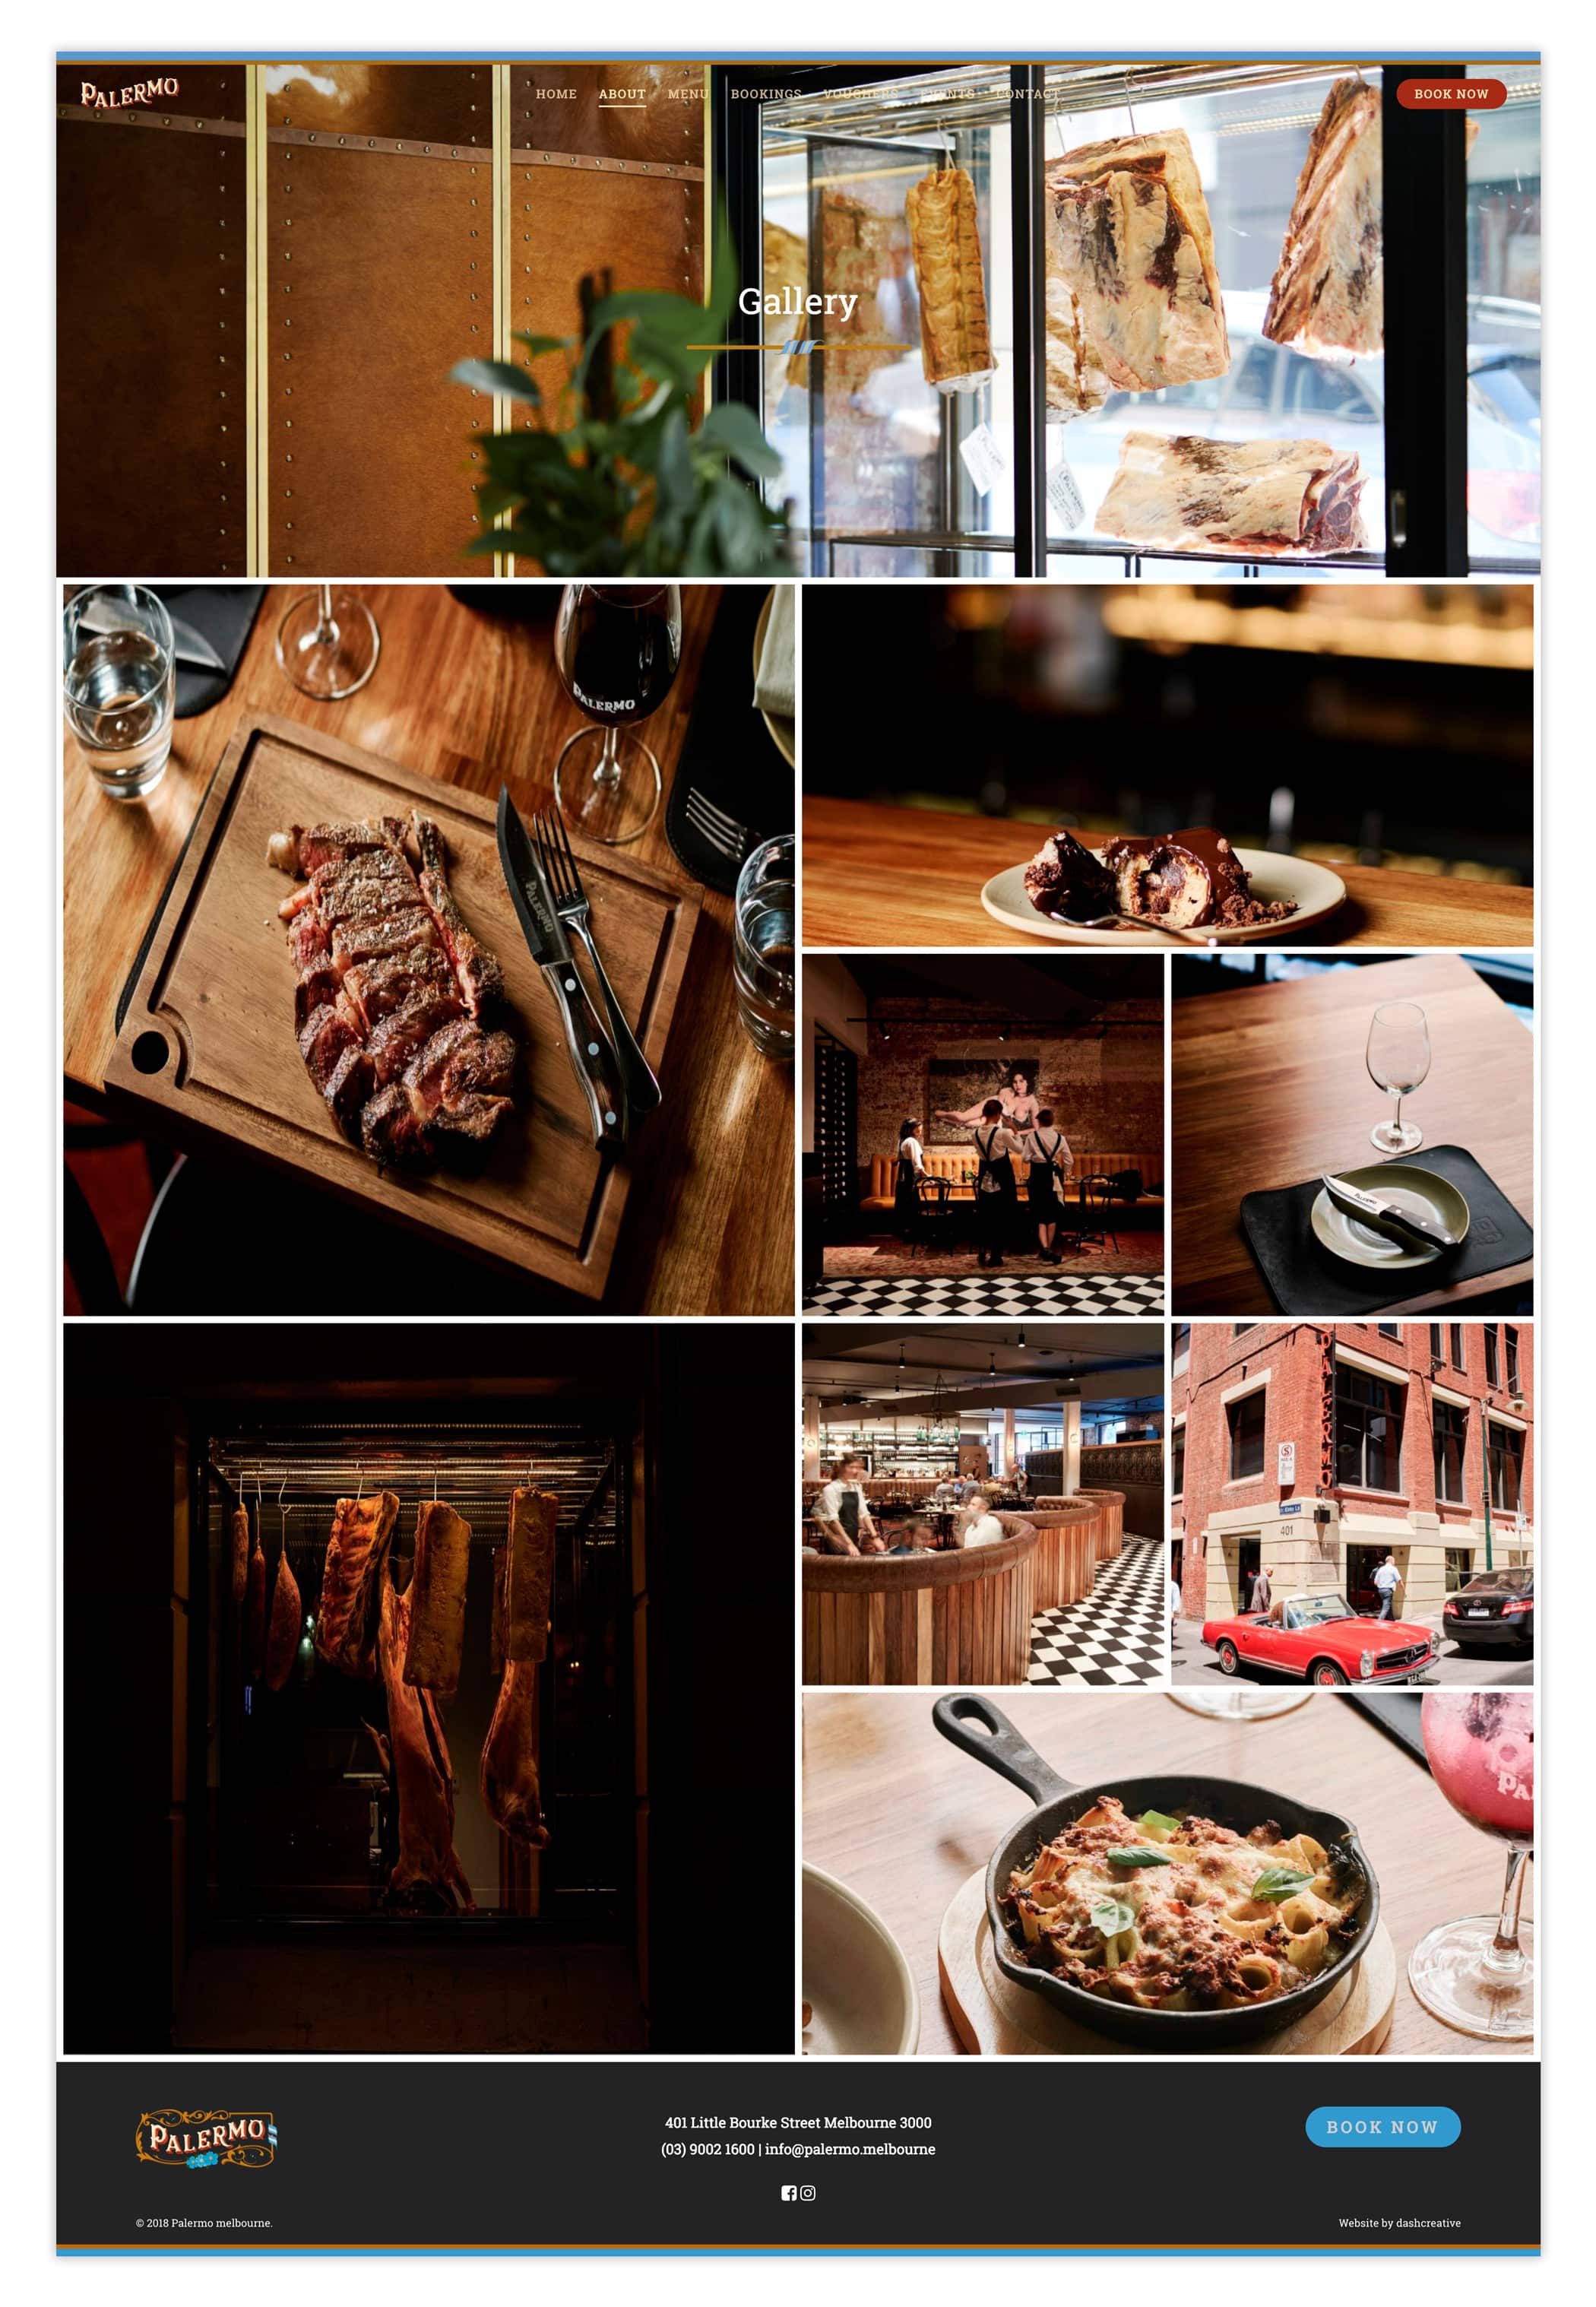 Palermo Steakhouse & Argentinian Restaurant website design